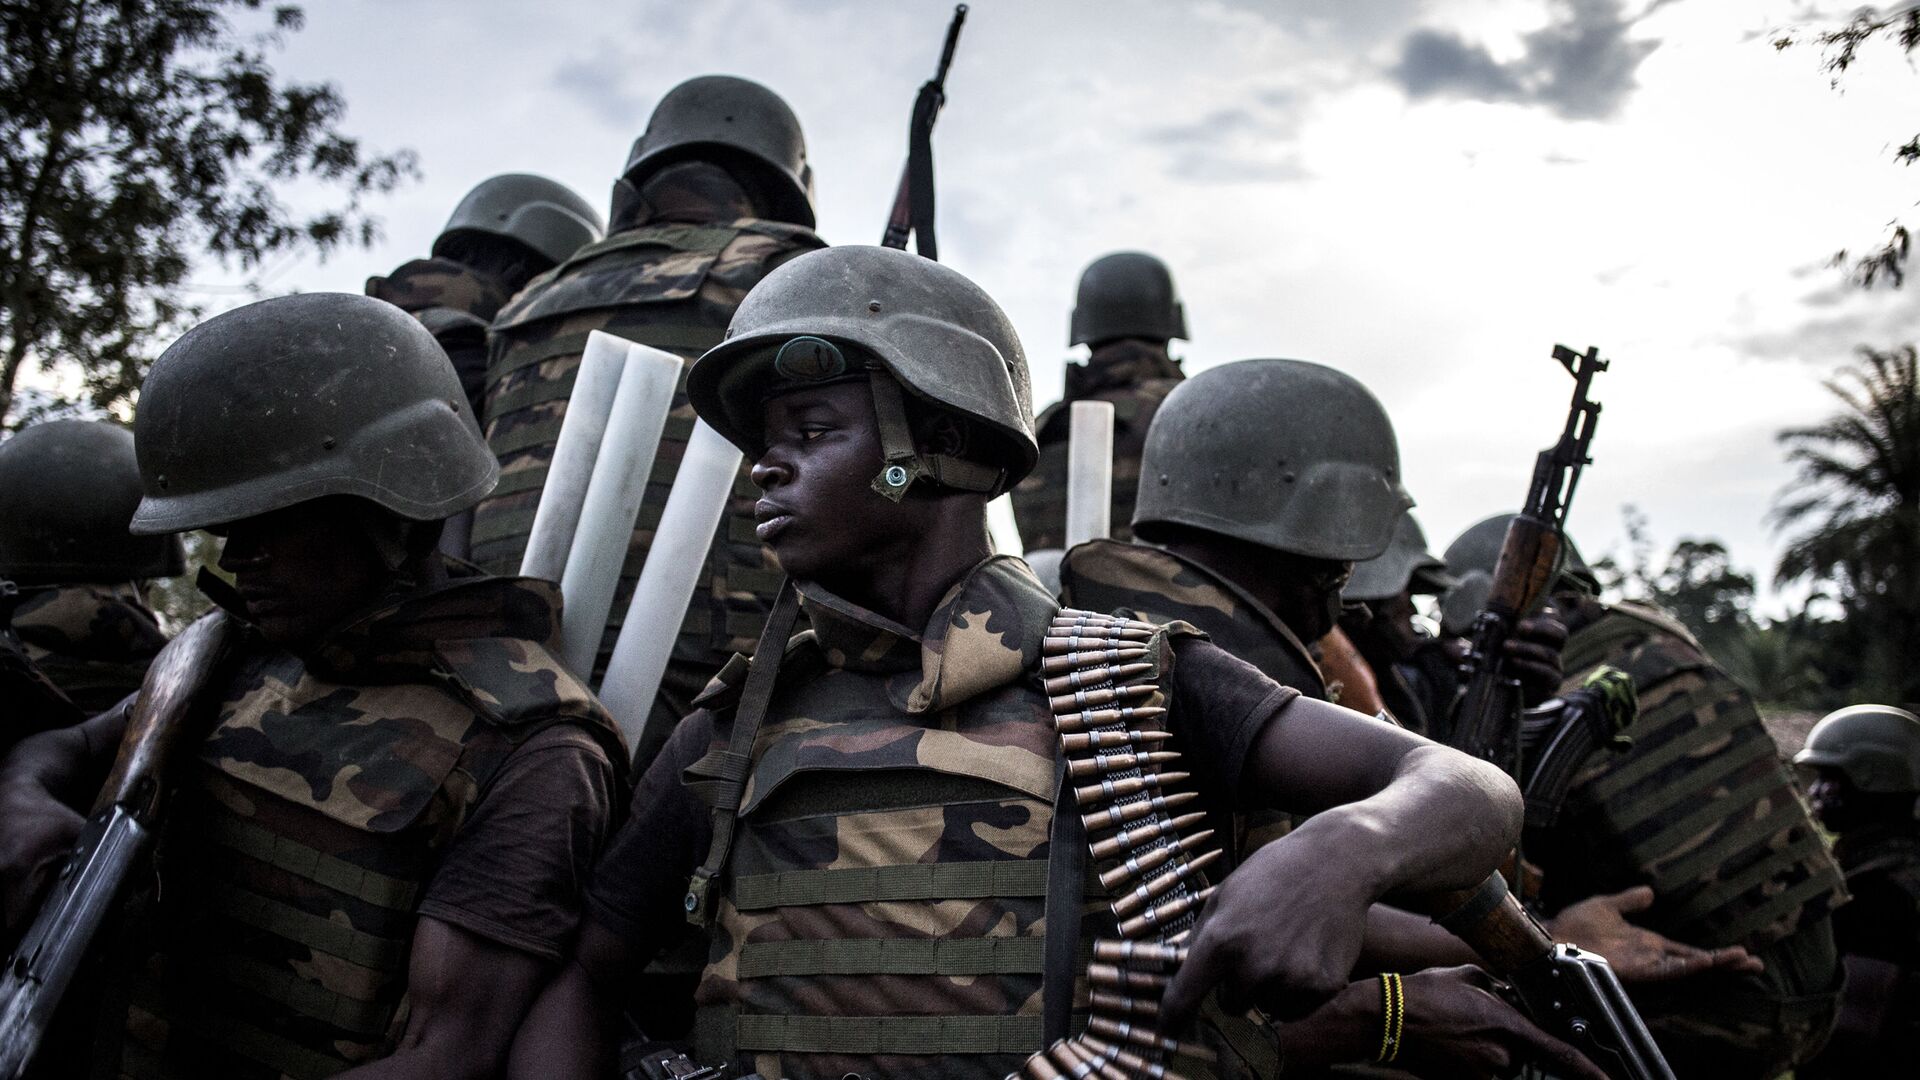 Des soldats des Forces armées de République démocratique du Congo, octobre 2018 - Sputnik Afrique, 1920, 30.07.2021